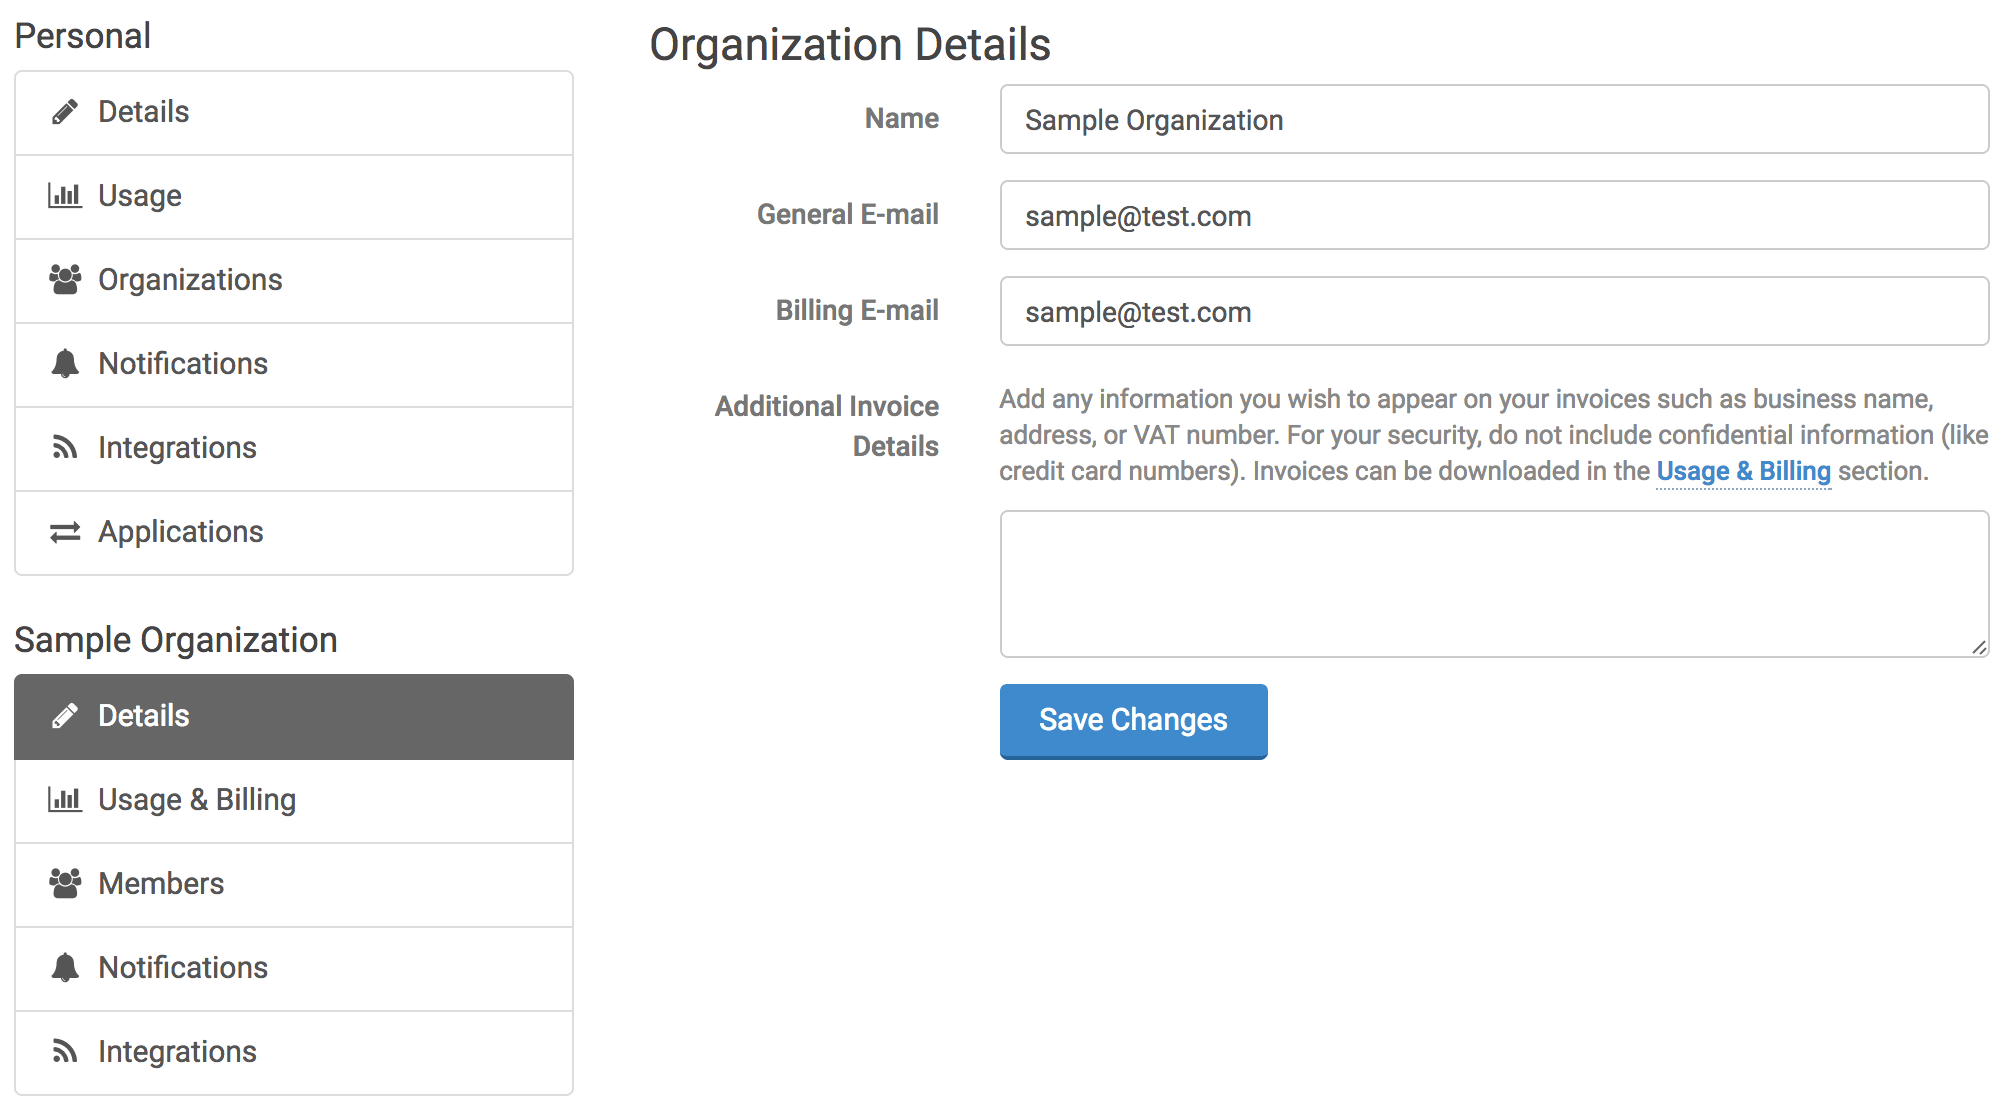 Organization Details